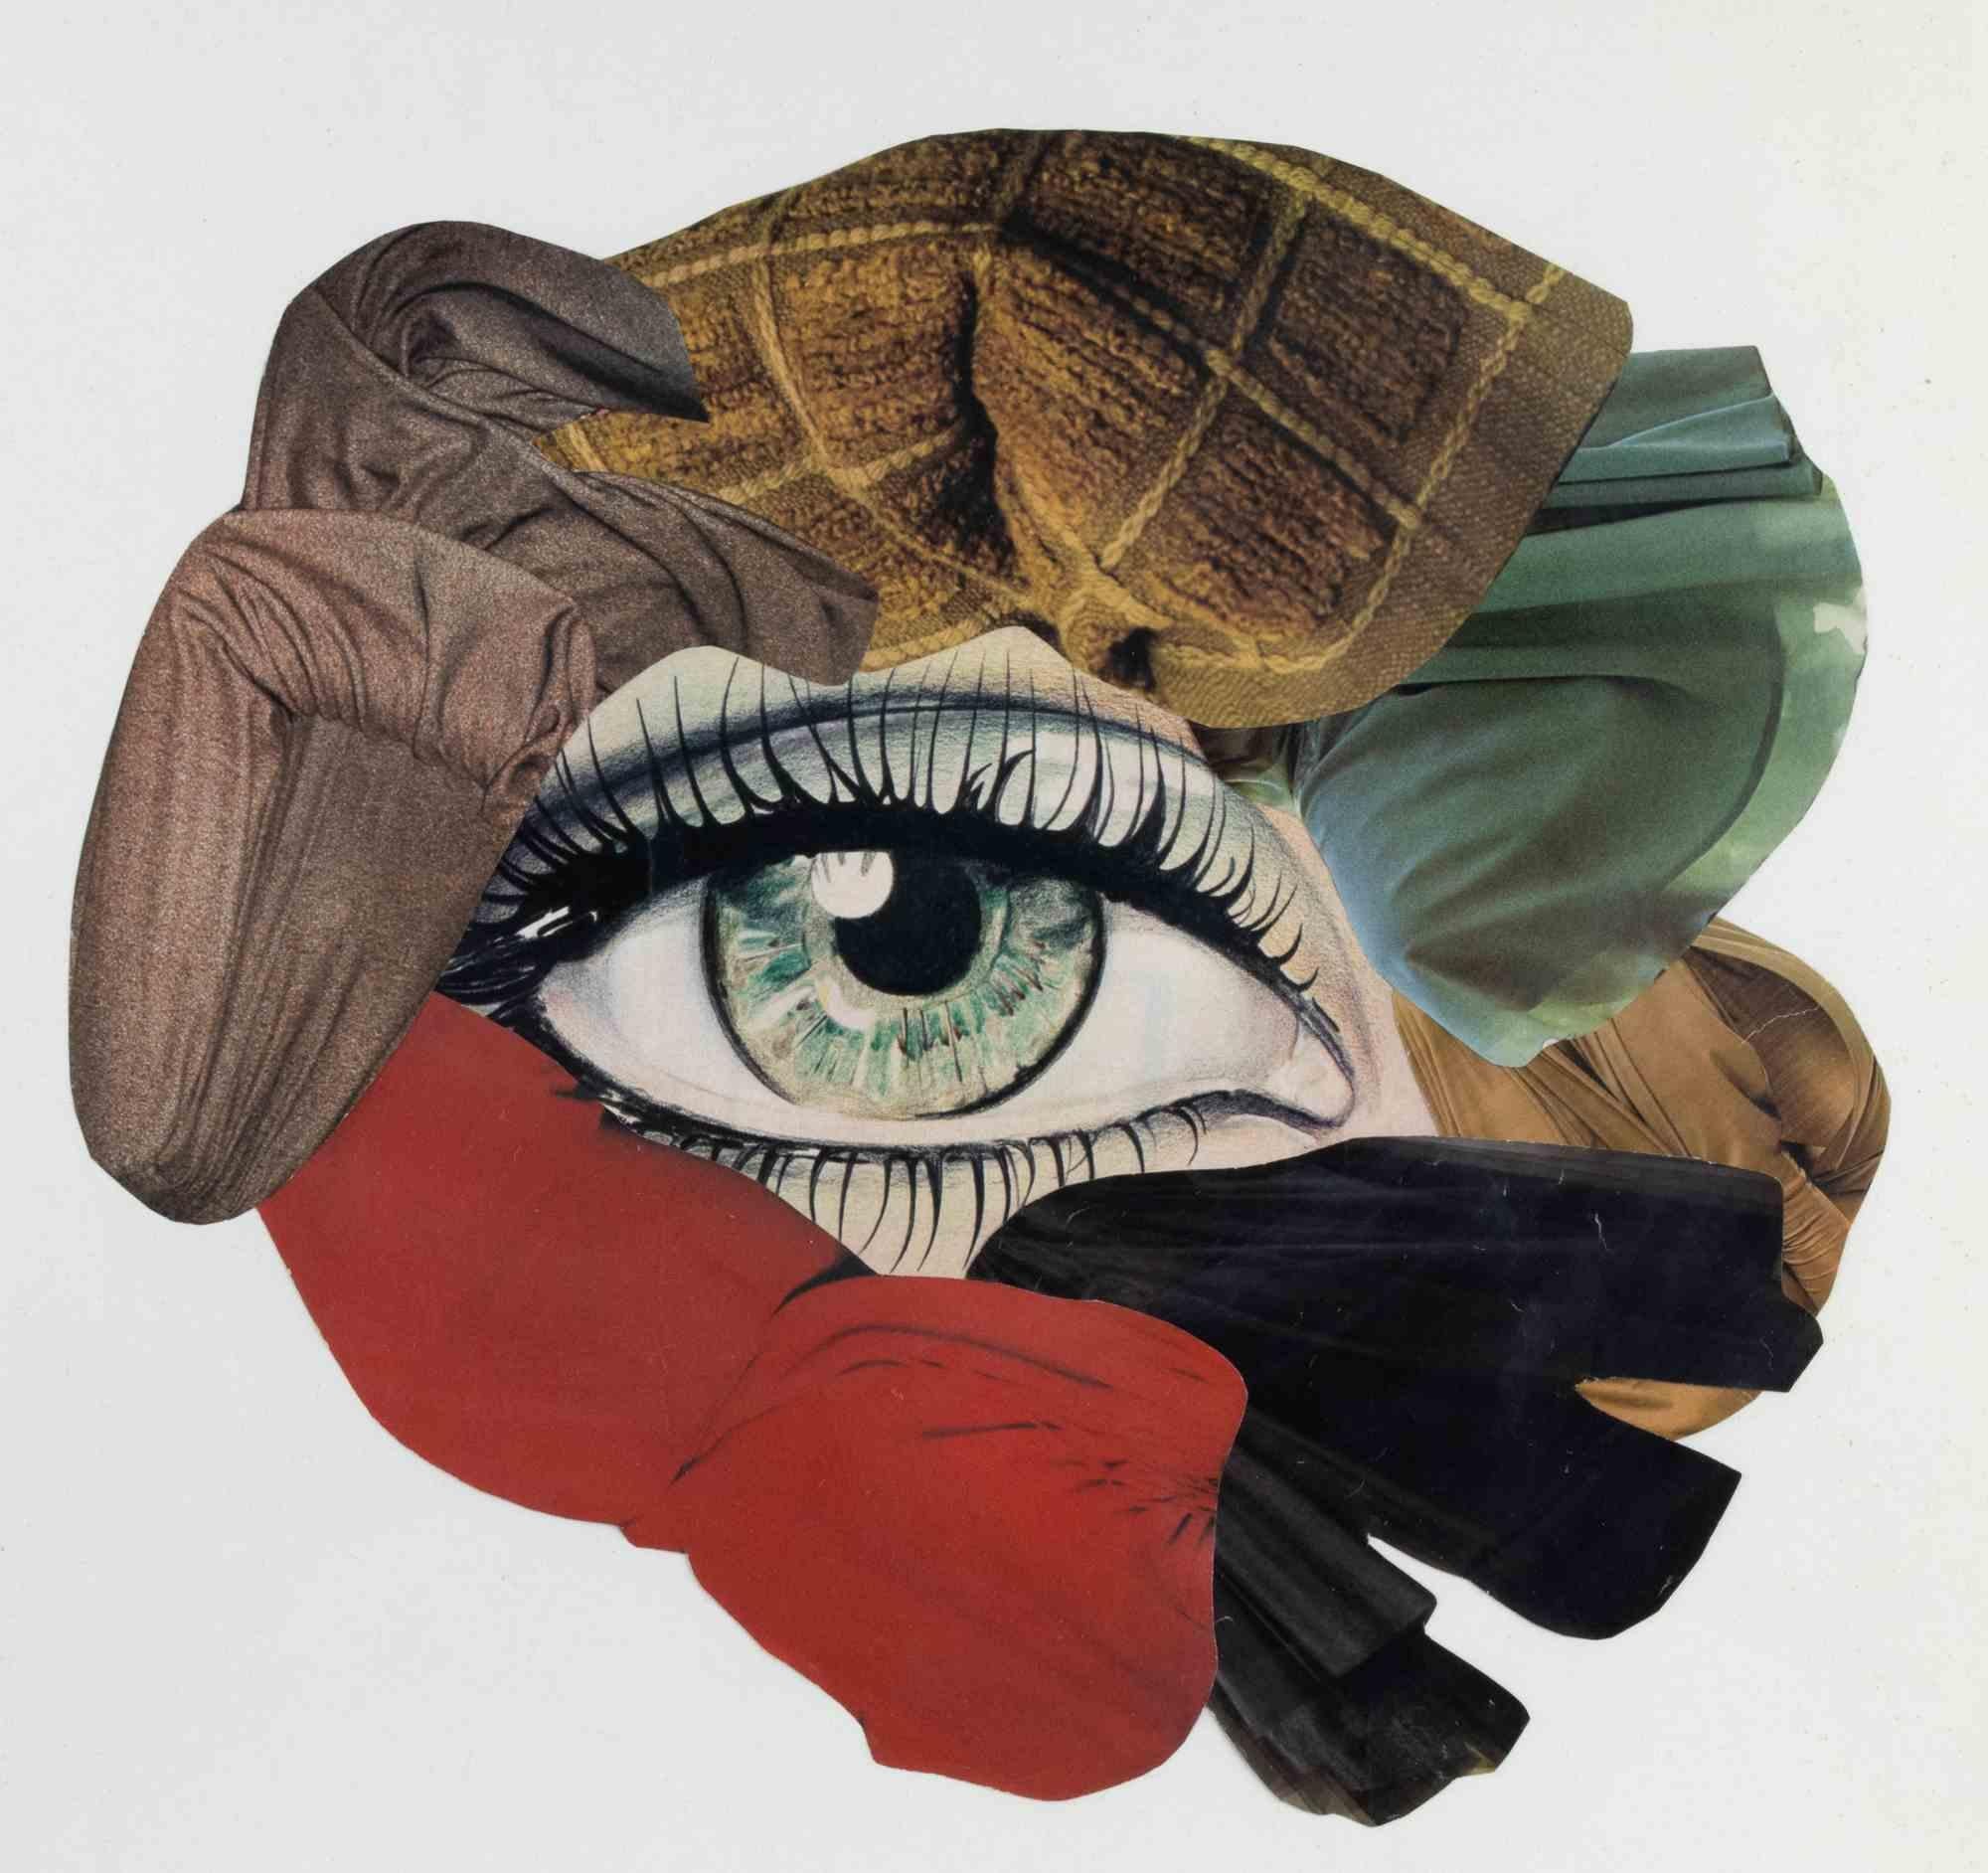 Green eye ist ein zeitgenössisches Kunstwerk von Genny Puccini aus dem Jahr 1977. 

Gemischte Farbcollage auf Papier.

Handsigniert und datiert am unteren rechten Rand.








